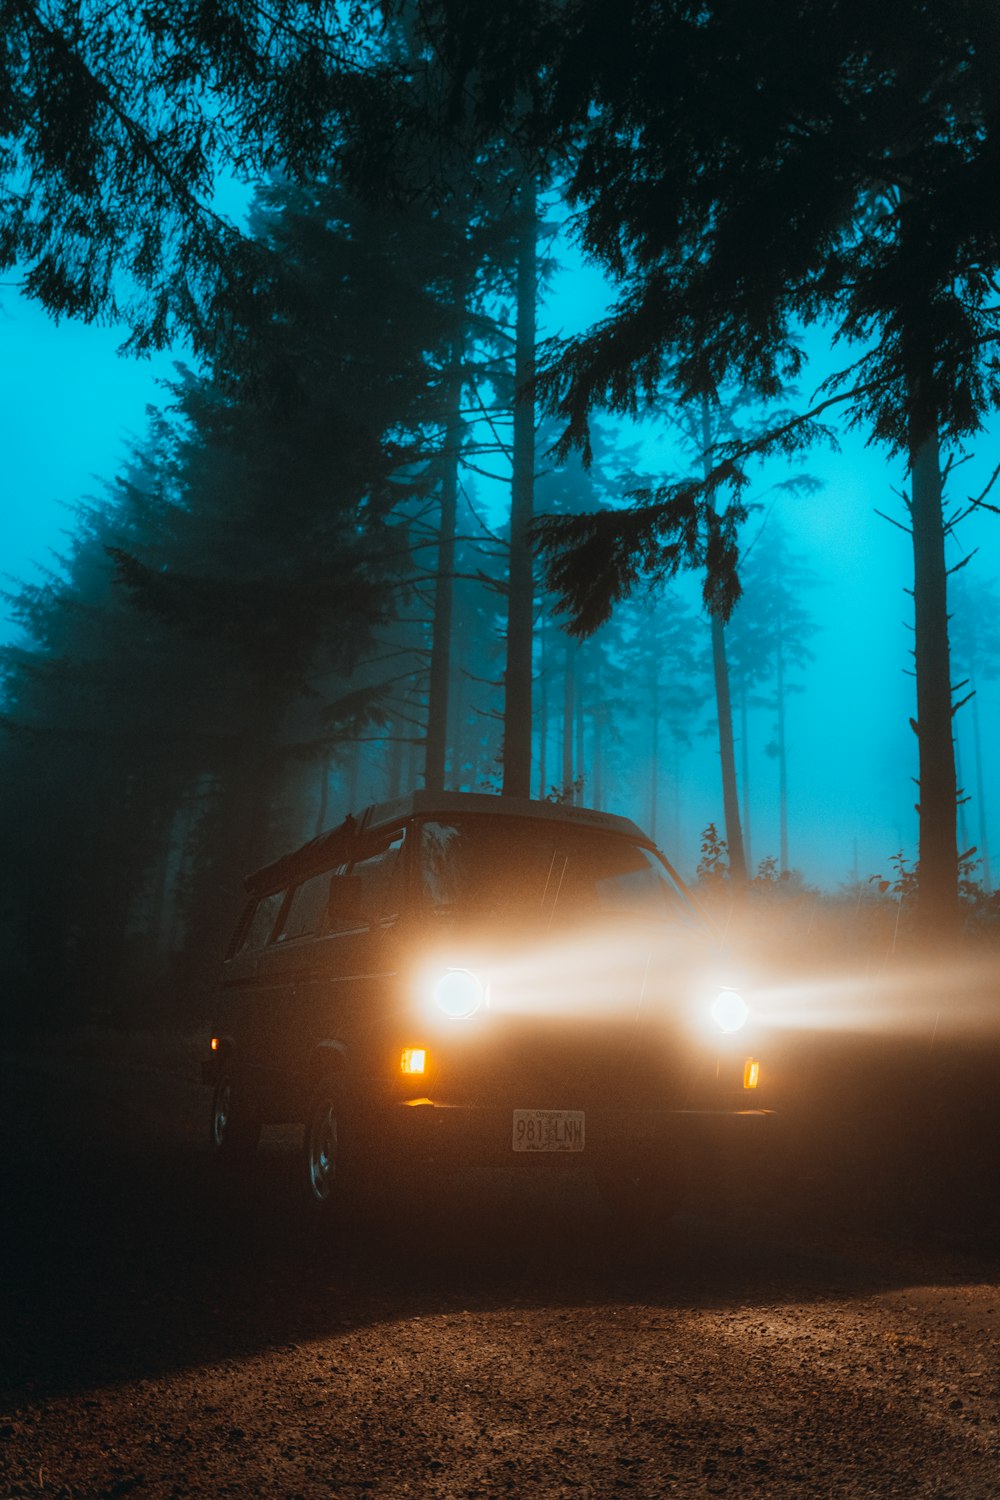 voiture noire sur la route entre les arbres pendant la nuit